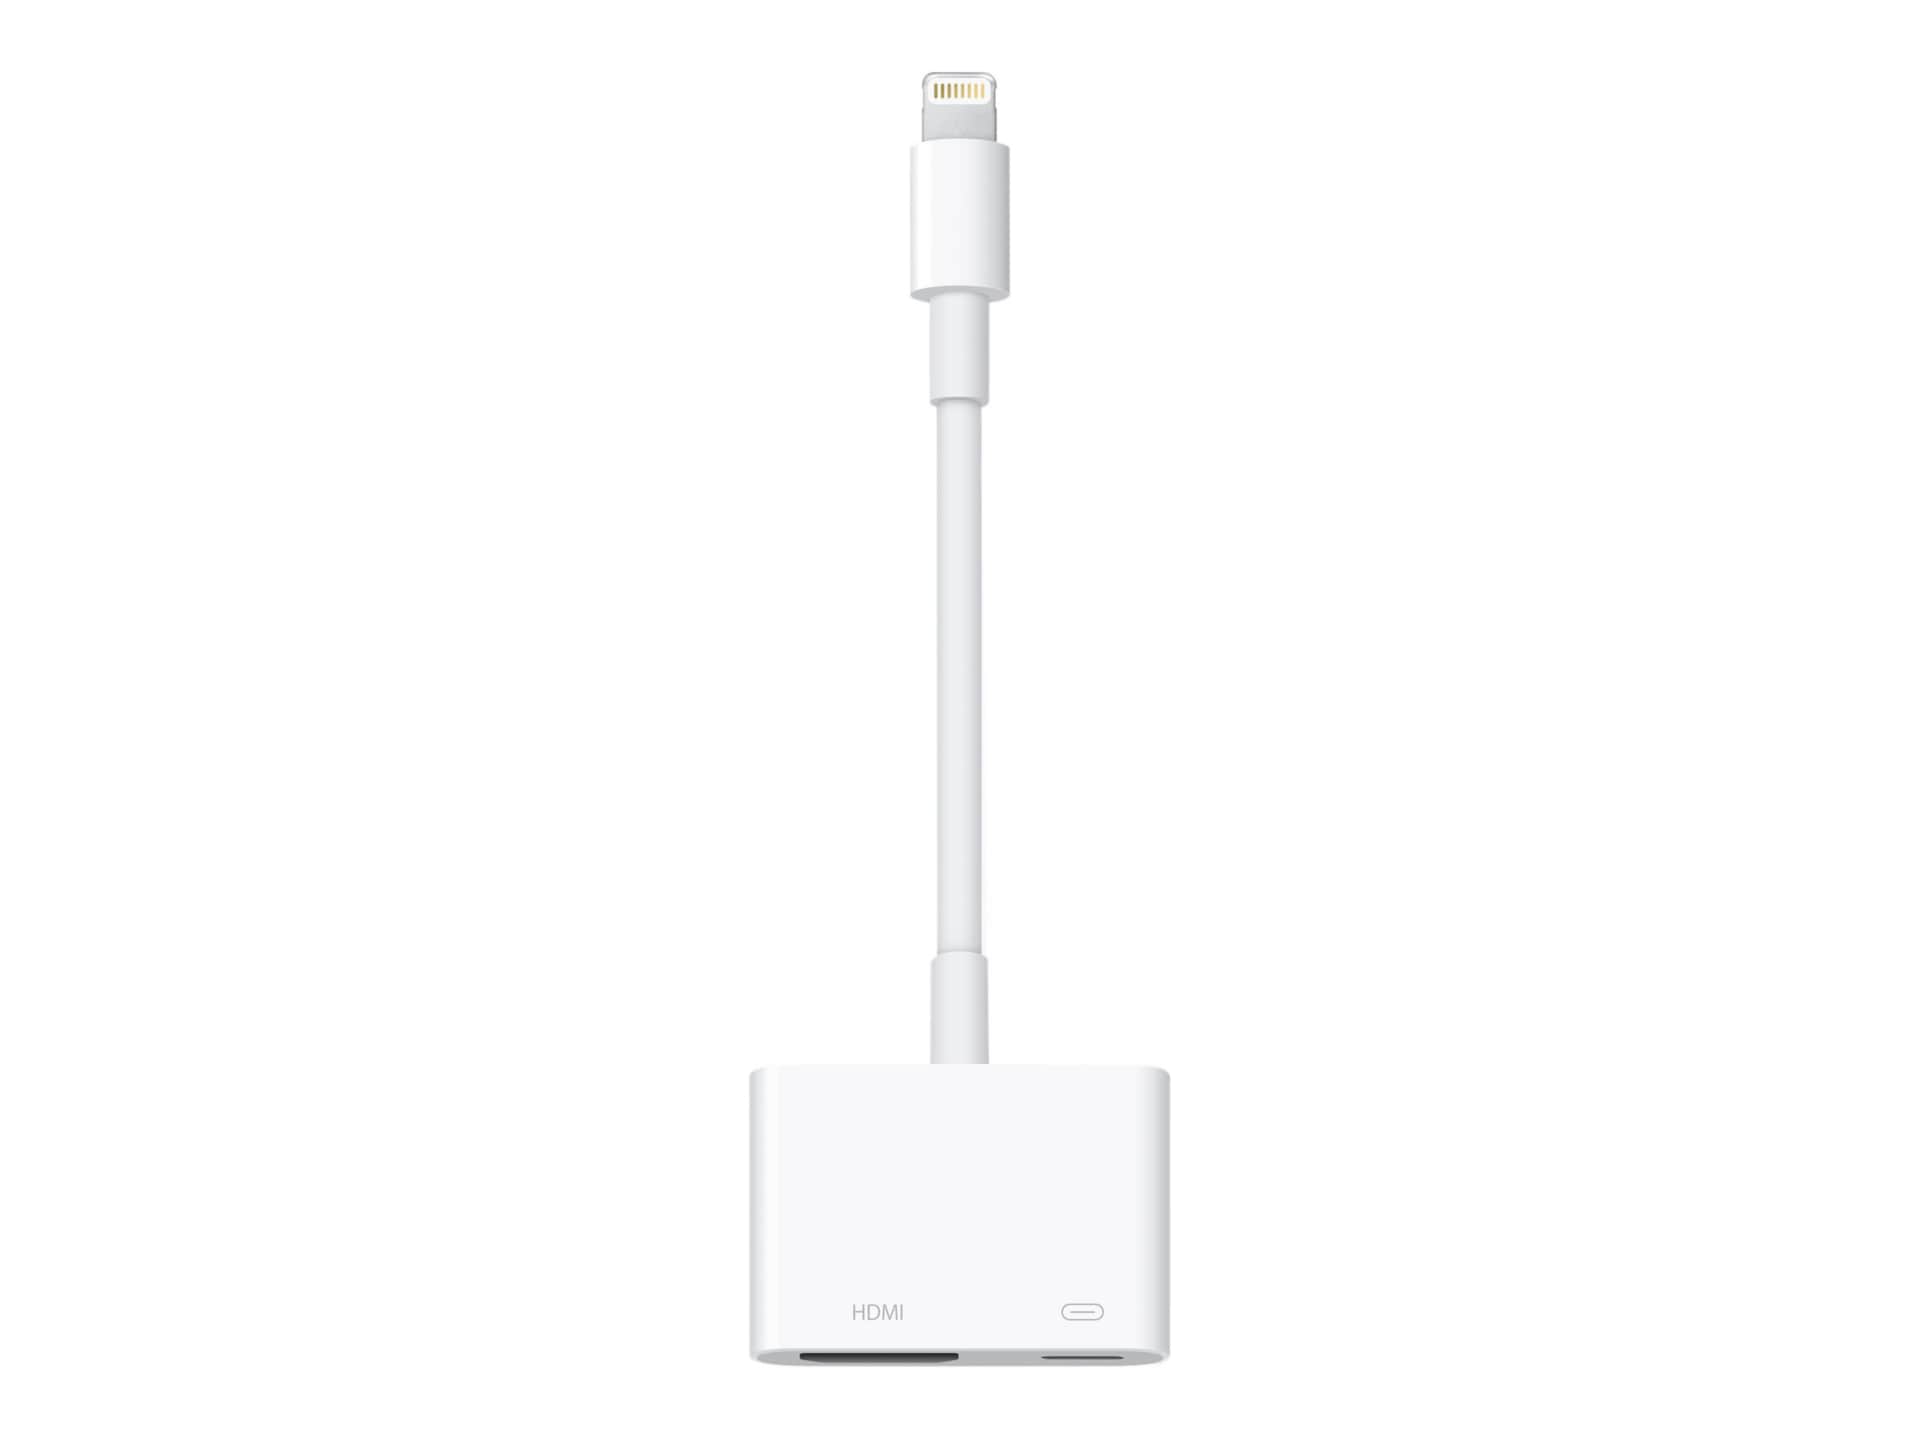 Apple Lightning to Digital AV Adapter : Electronics 